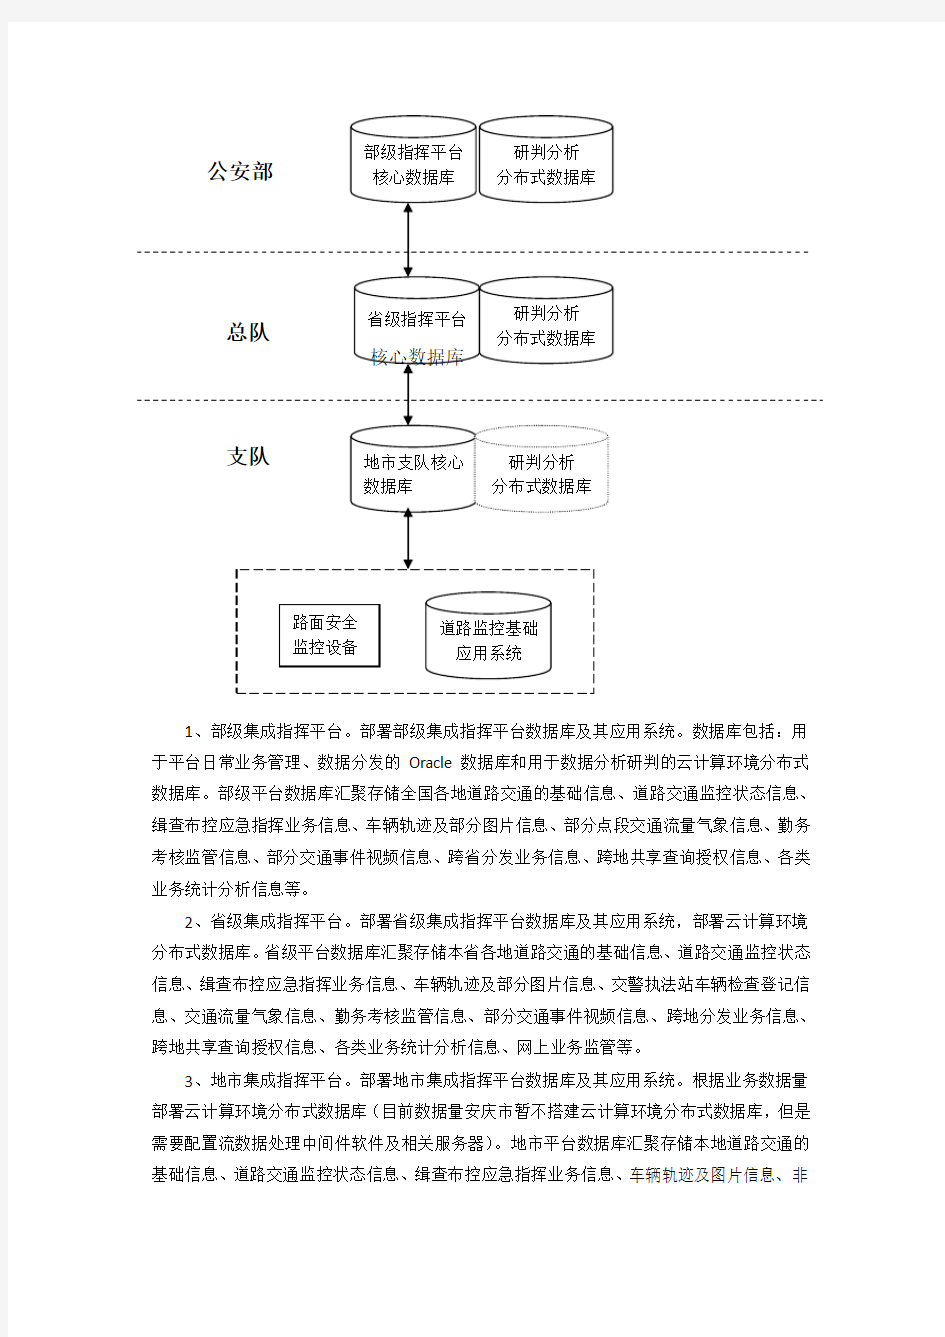 (完整版)安庆公安局交通警察支队集成指挥平台软硬件采购项目